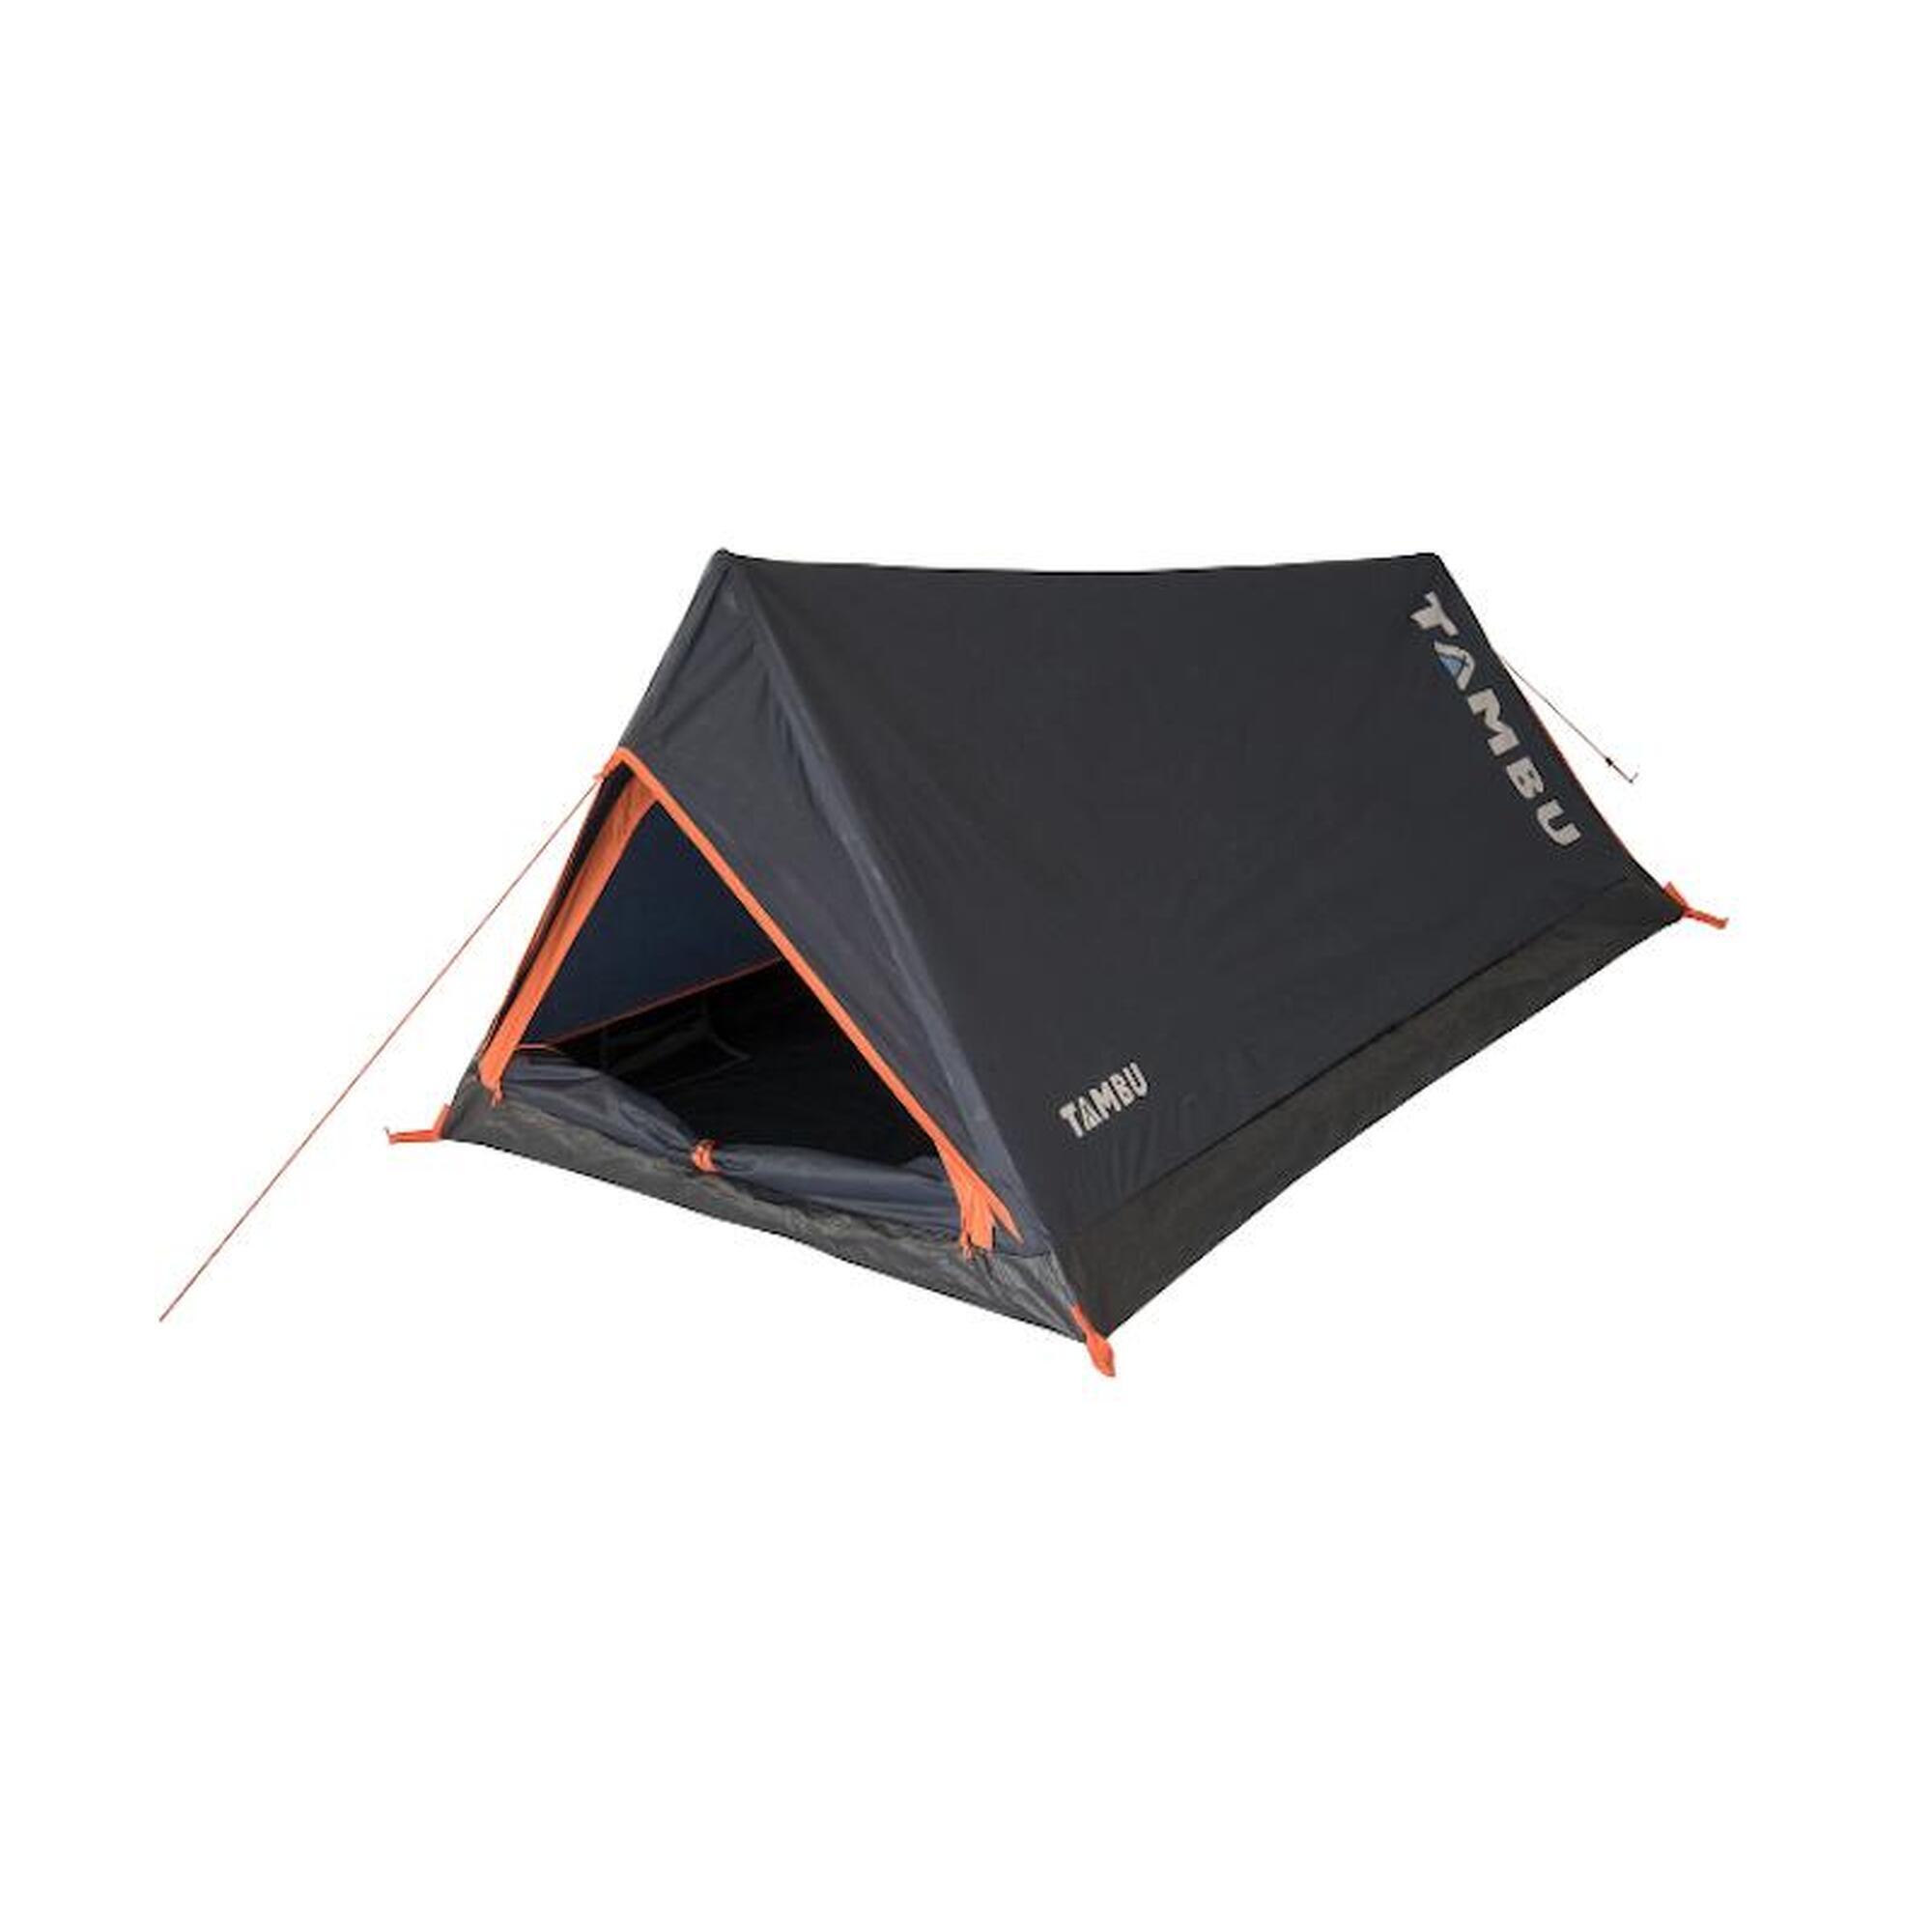 Палатка Tambu Bayu легкая двухместная бивачная, синий / оранжевый палатка tambu легкая треккинговая для 2 человек светло серый синий